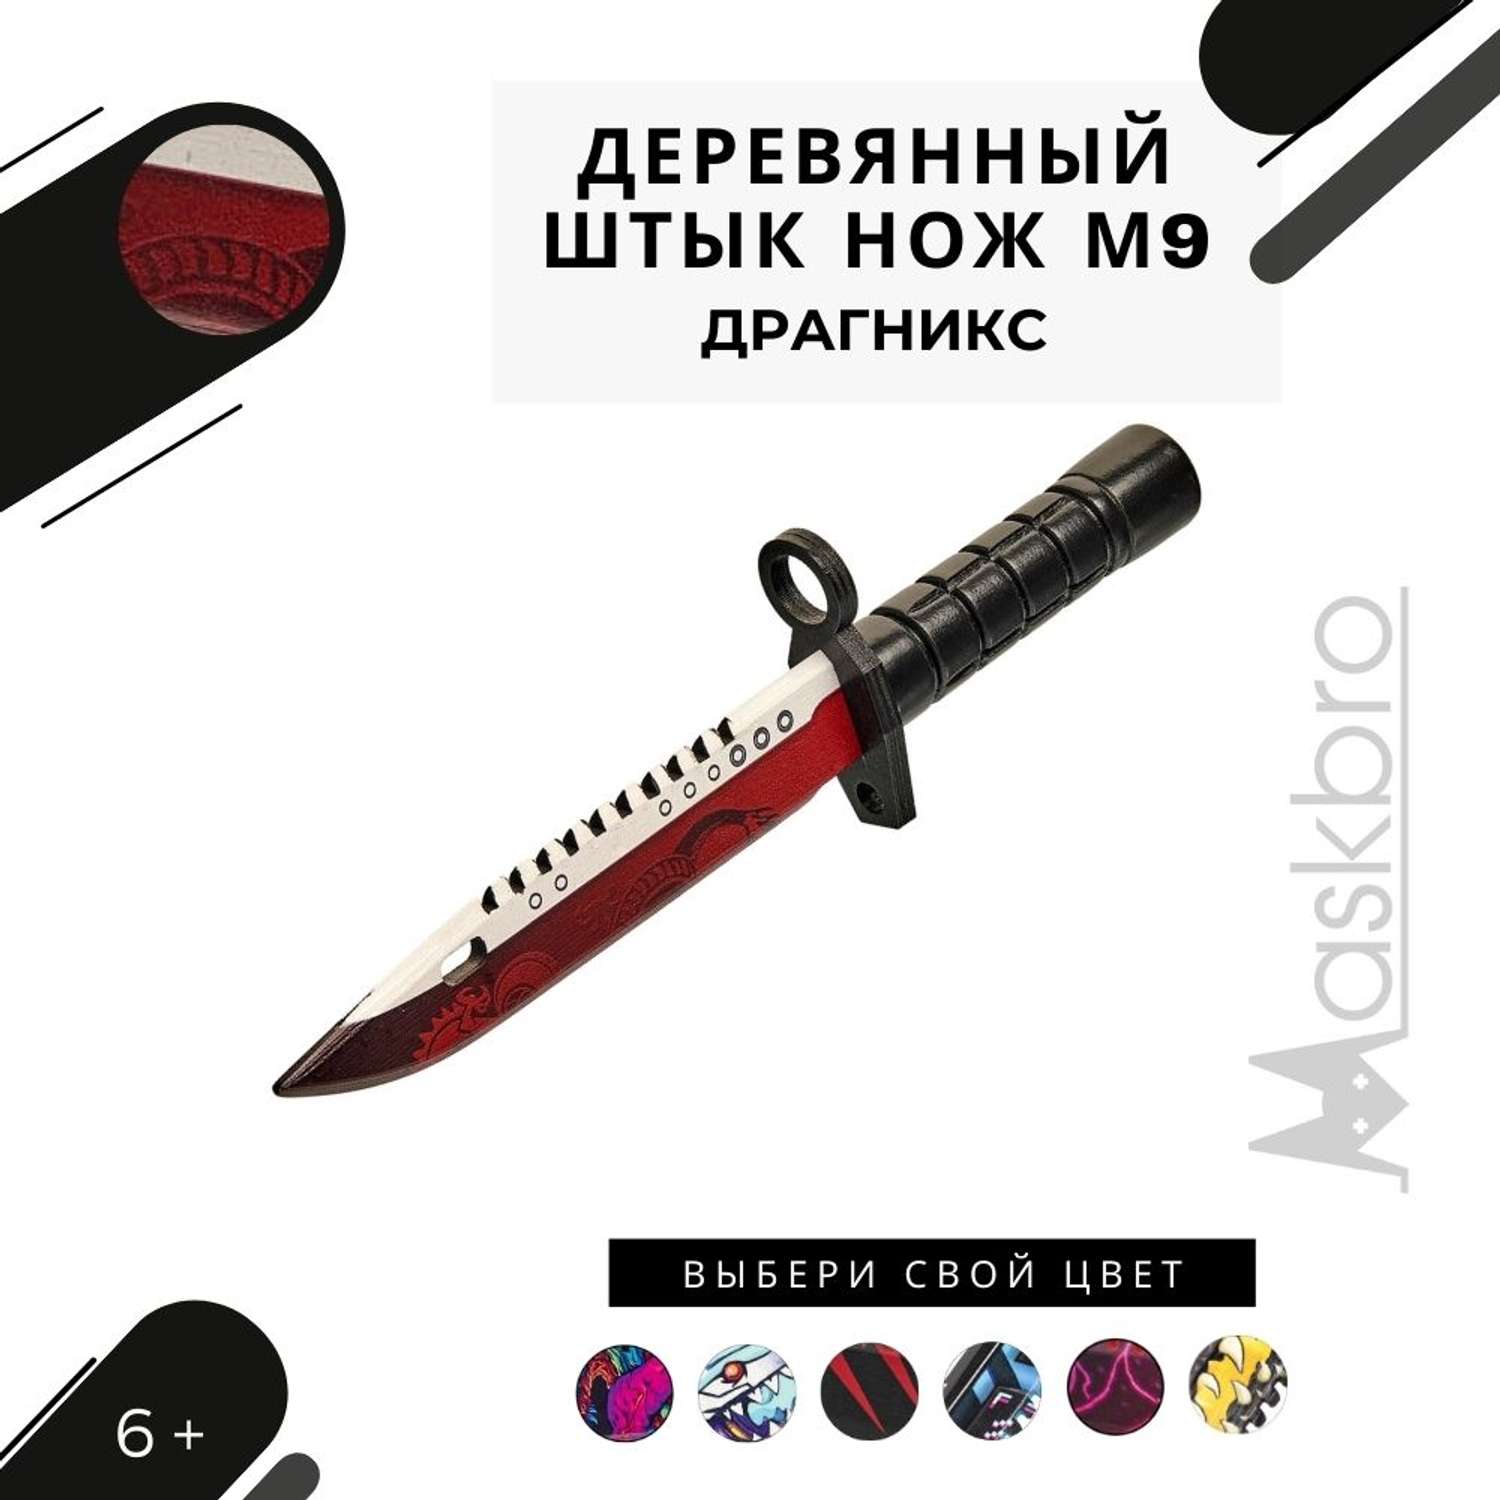 Штык-нож MASKBRO Байонет М-9 Драгникс деревянный - фото 1